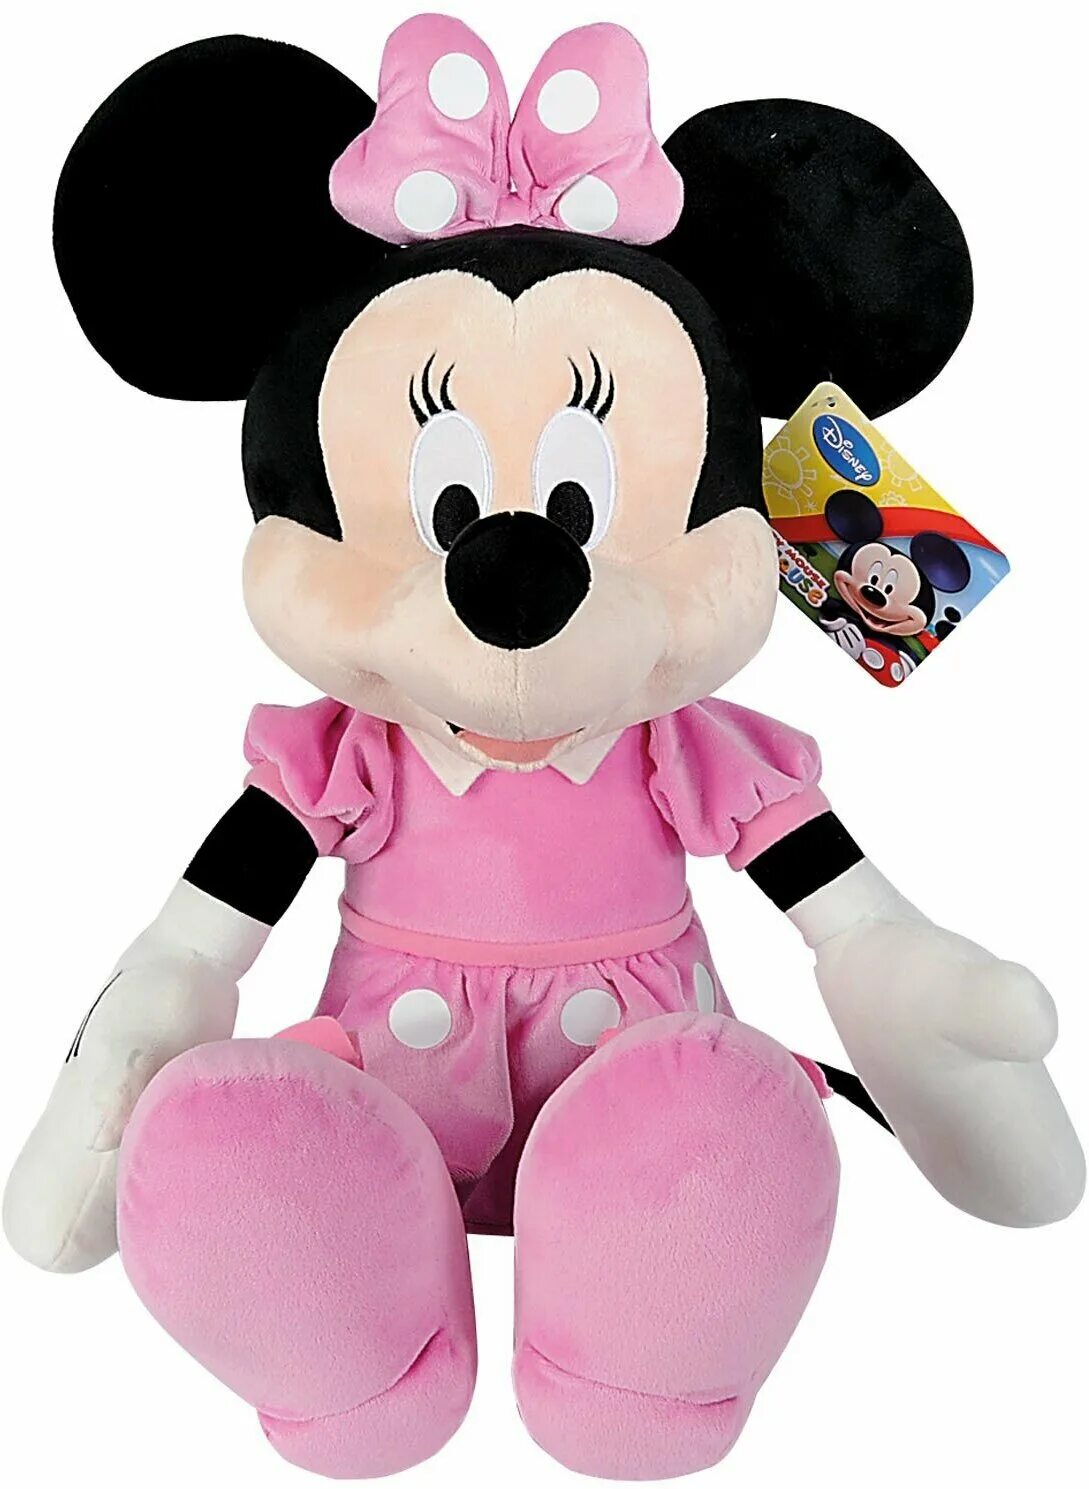 Игрушки для девушек купить. Минни Маус Nicotoy 25см. Мягкая игрушка Simba Минни Маус 25 см. Мини Маус мягкая игрушка Дисней. Мягкая игрушка Minnie Mouse.